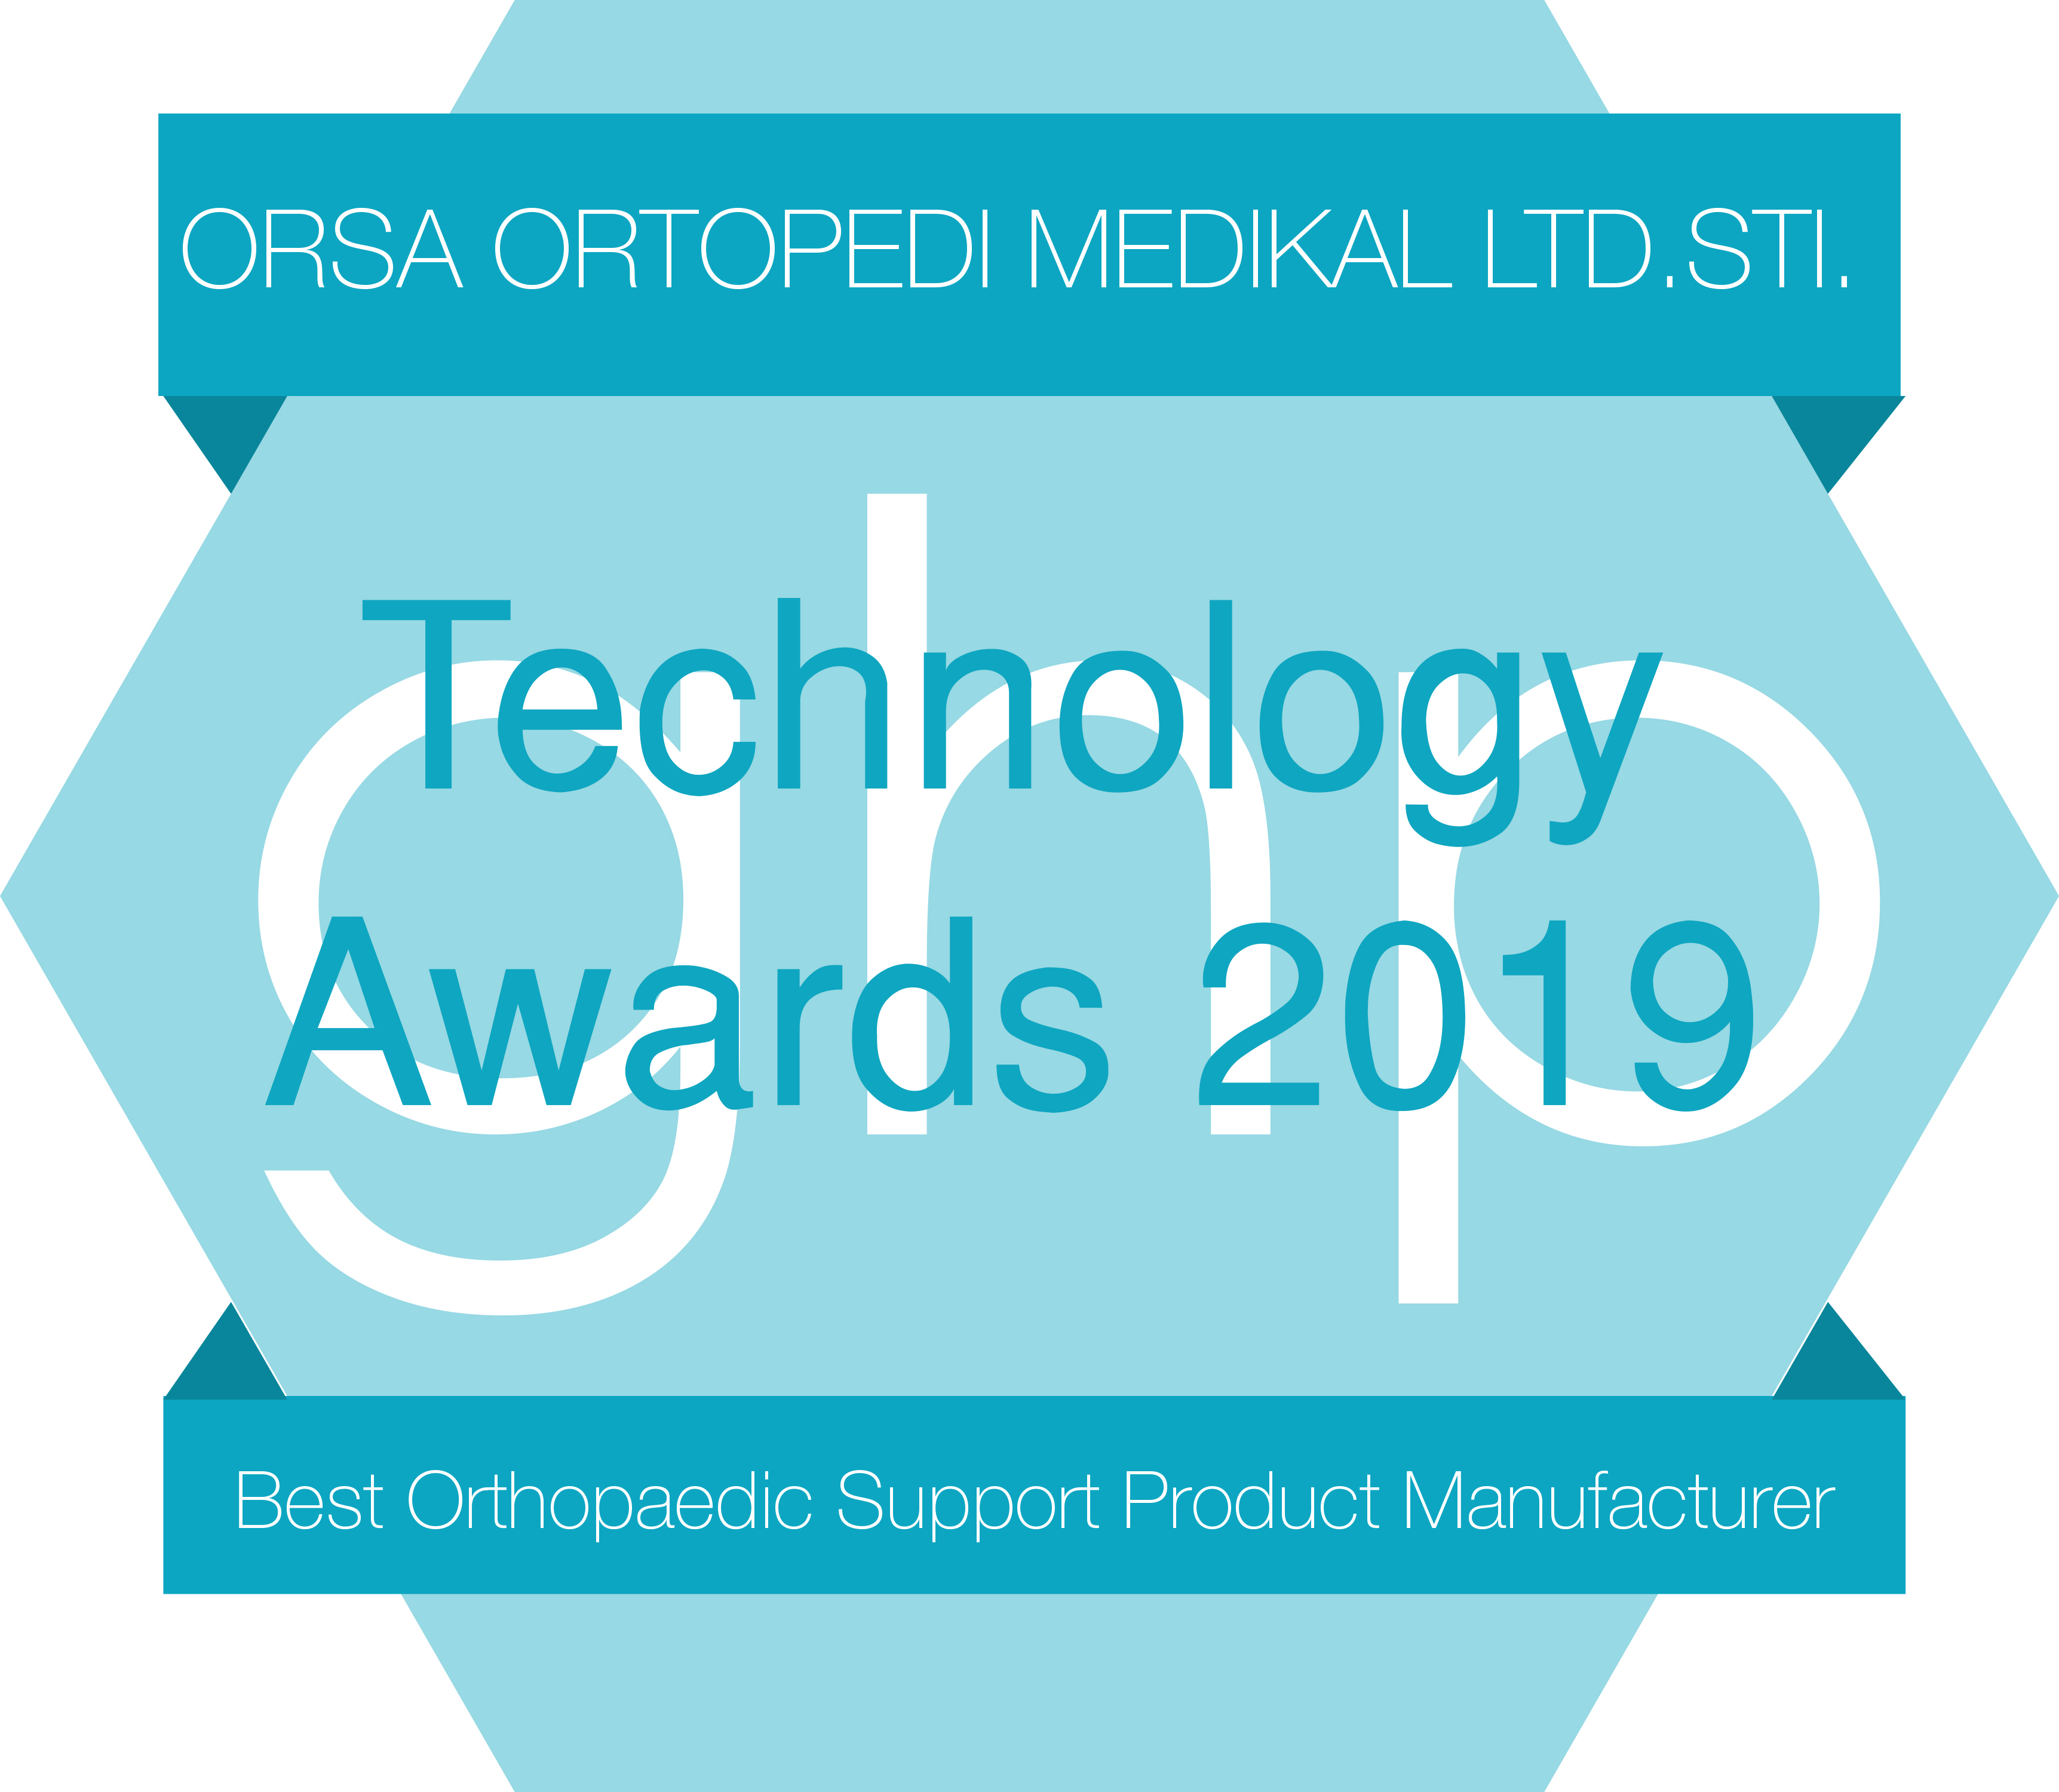 2019 En iyi Ortopedik Destek Ürünü Üreticisi Ödülü